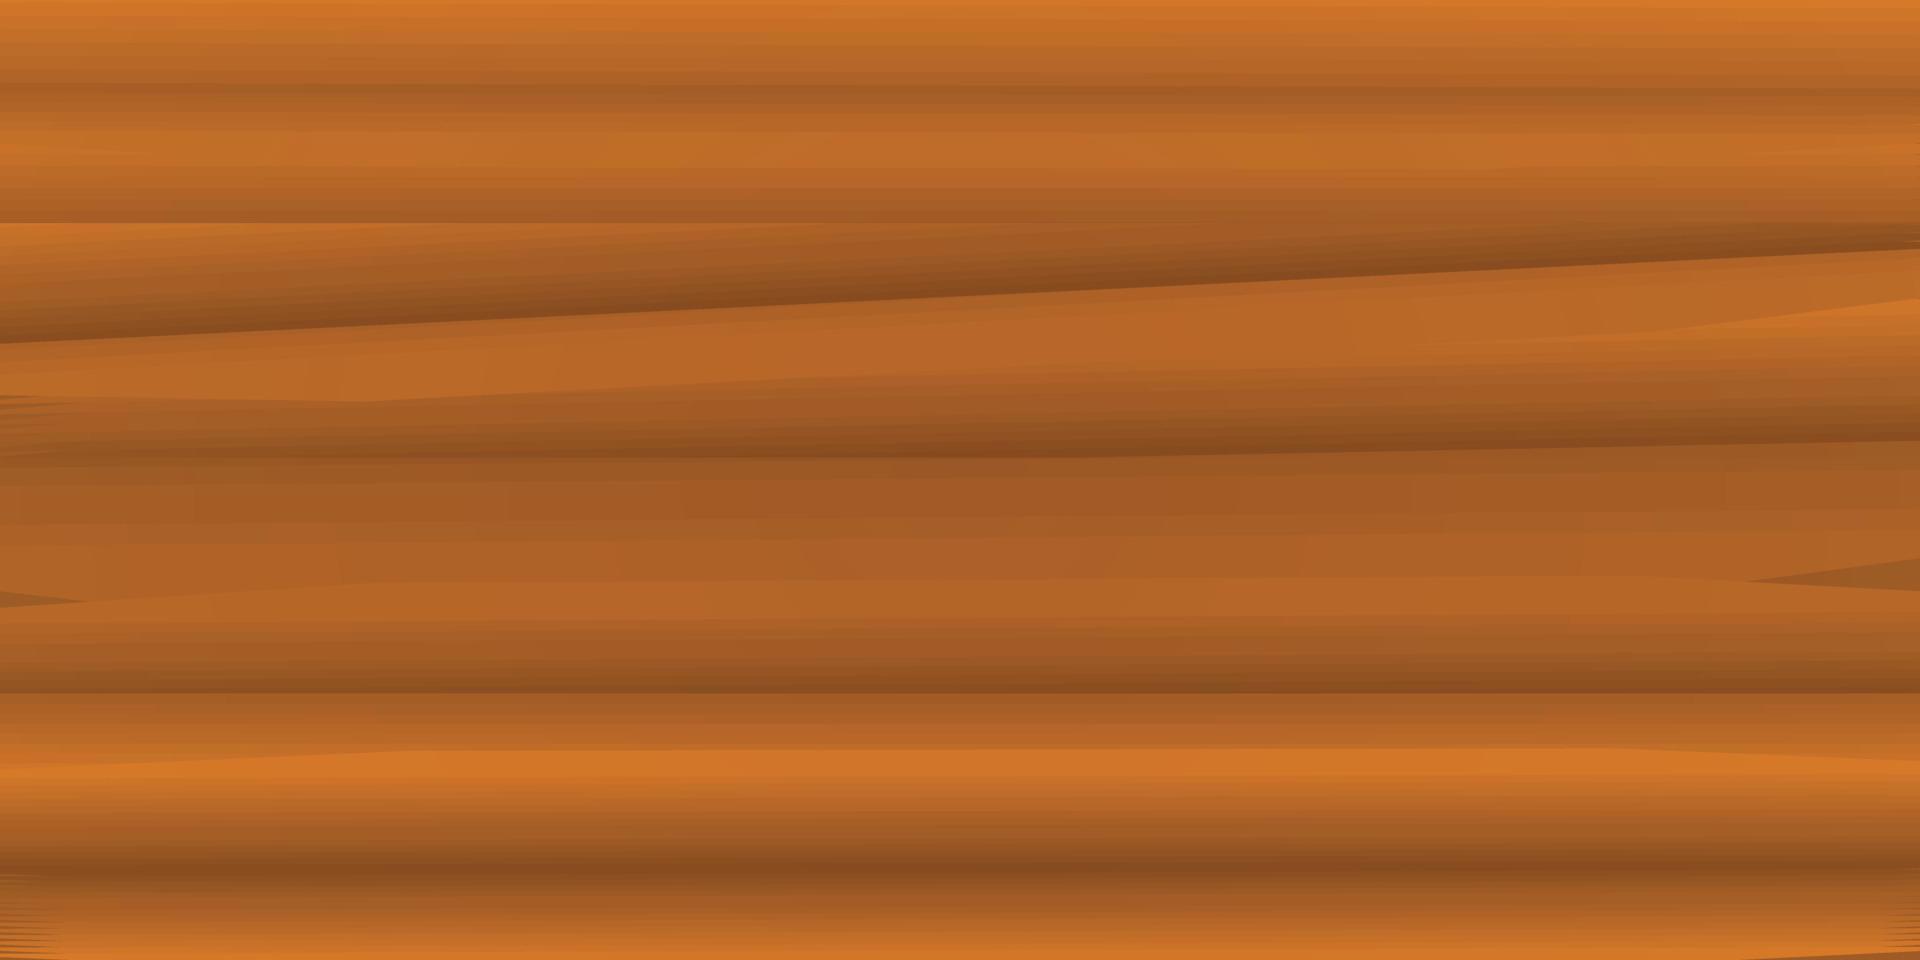 placa de prancha de madeira de madeira de carvalho cor marrom textura de fundo abstrato vintage papel de parede padrão de fundo ilustração vetorial sem costura vetor